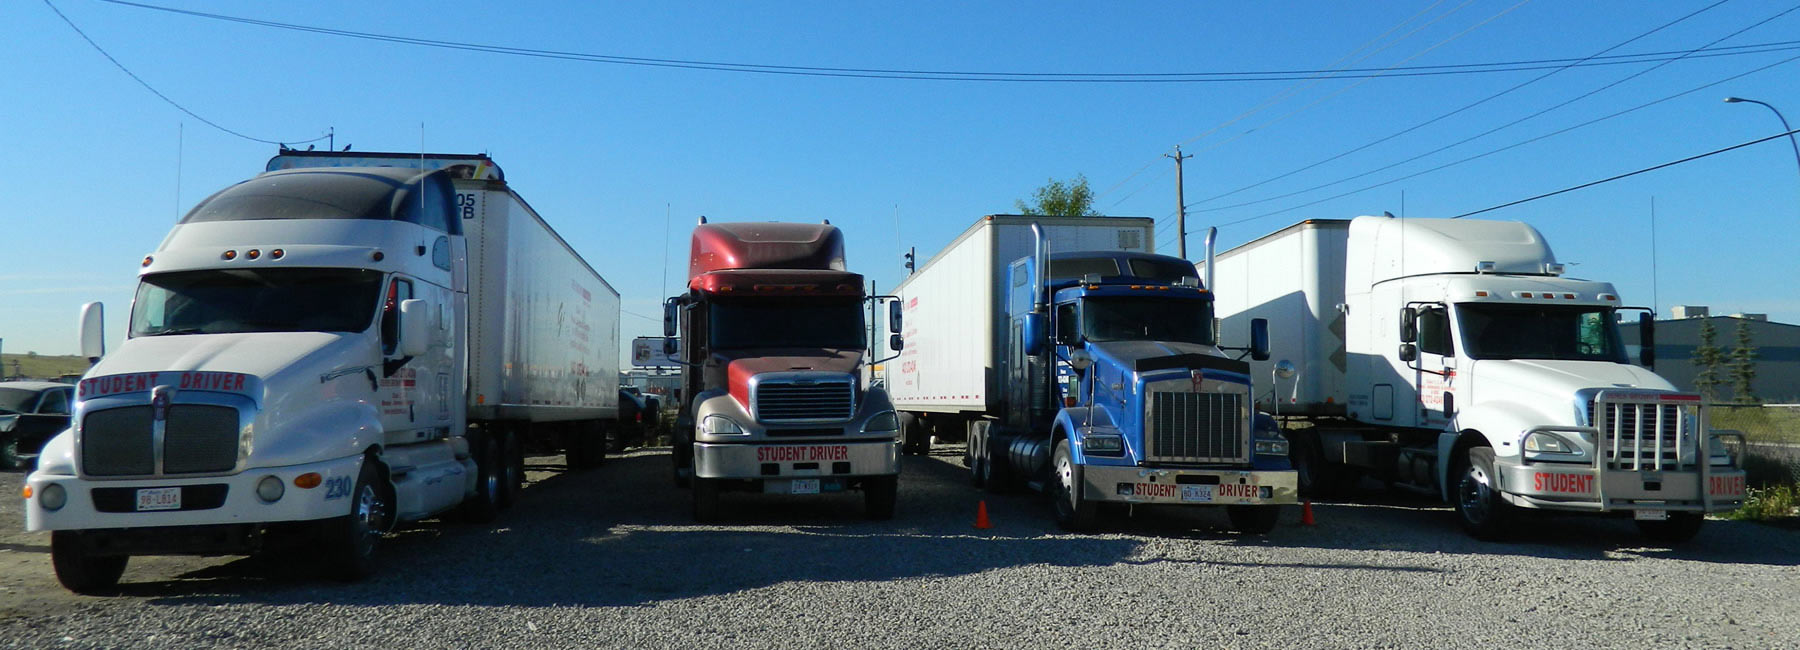 Trucks at Derek Brown's Academy of Driving in Calgary, AB